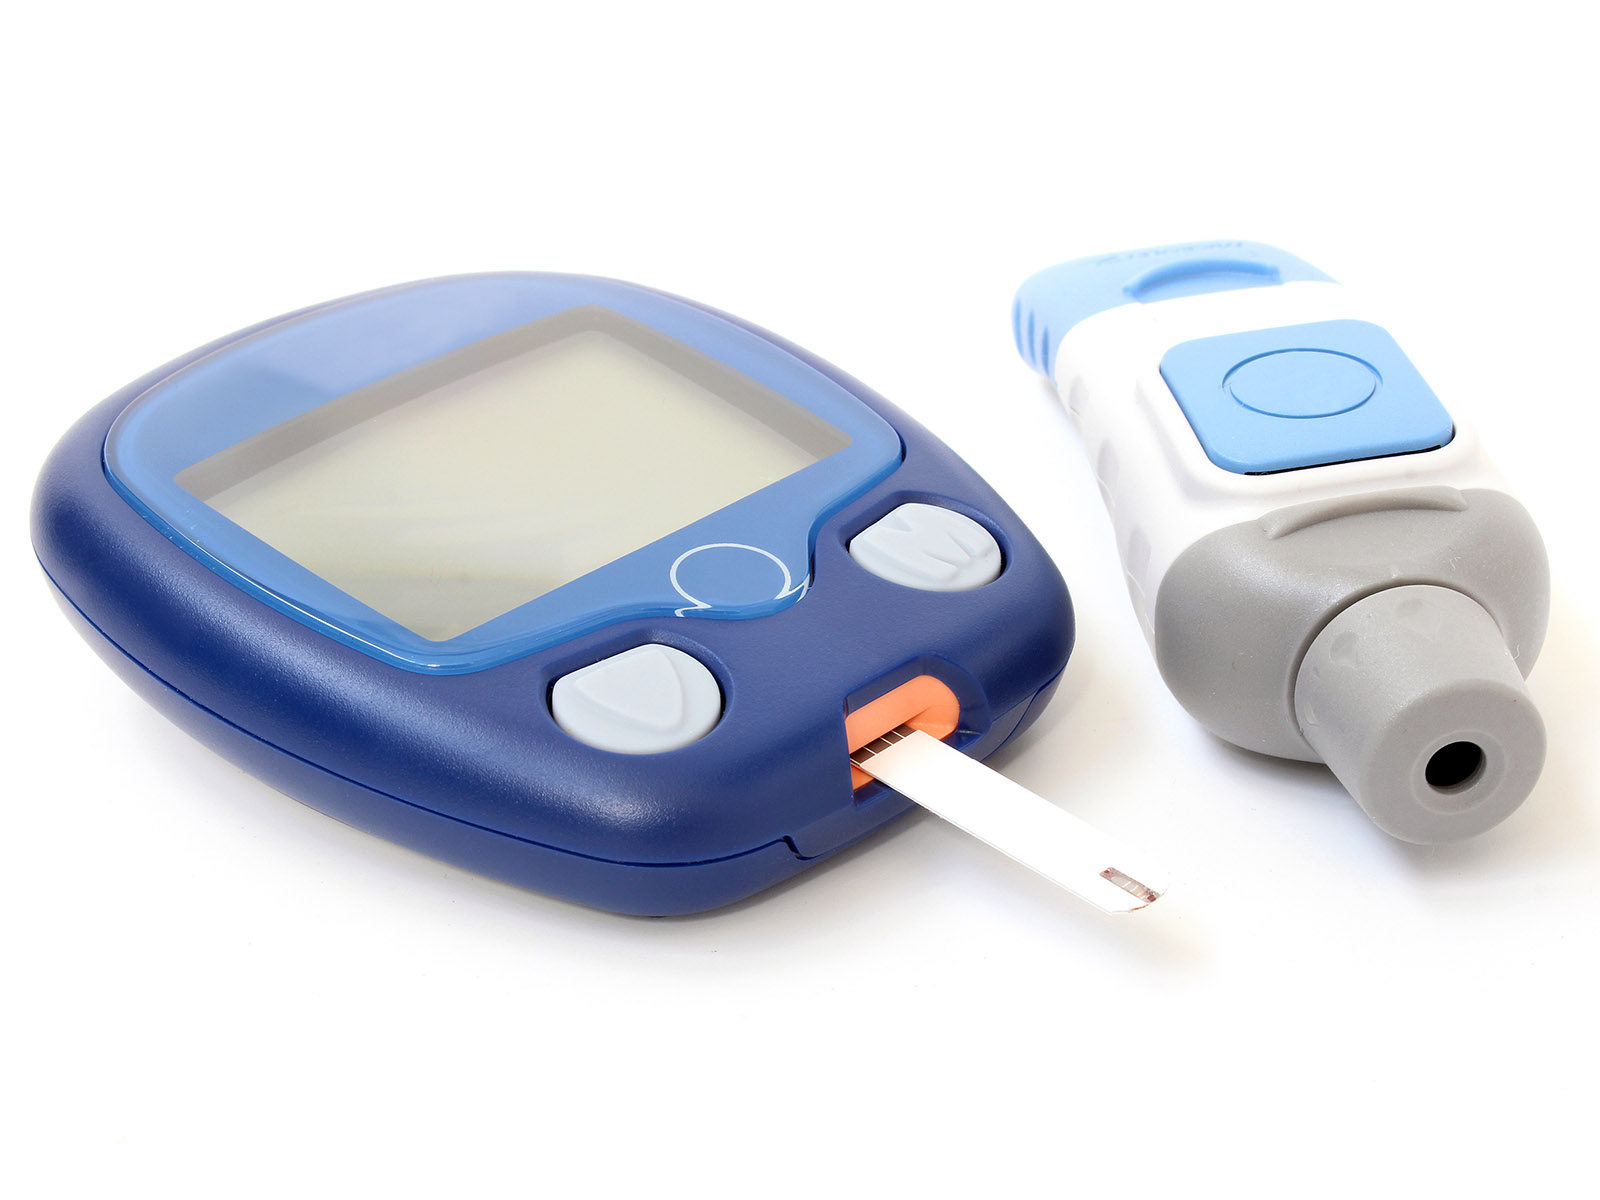 Diabetes monitoring